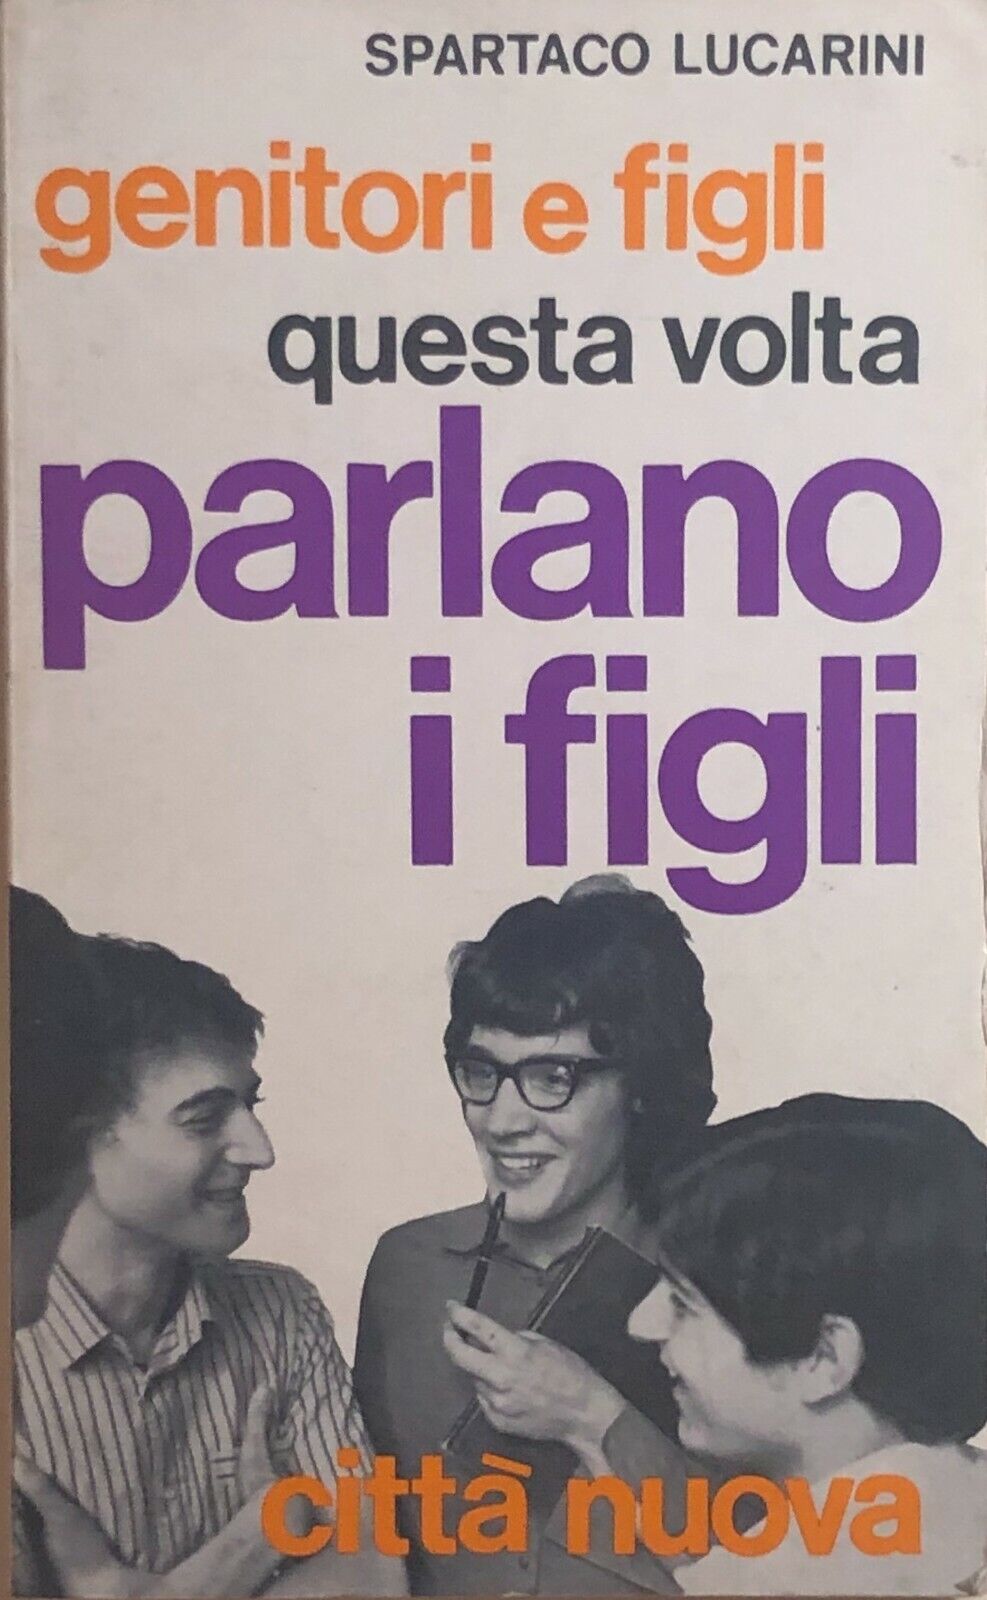 Genitori e figli: questa volta parlano i figli di Spartaco Lucarini, 1969, Citt?